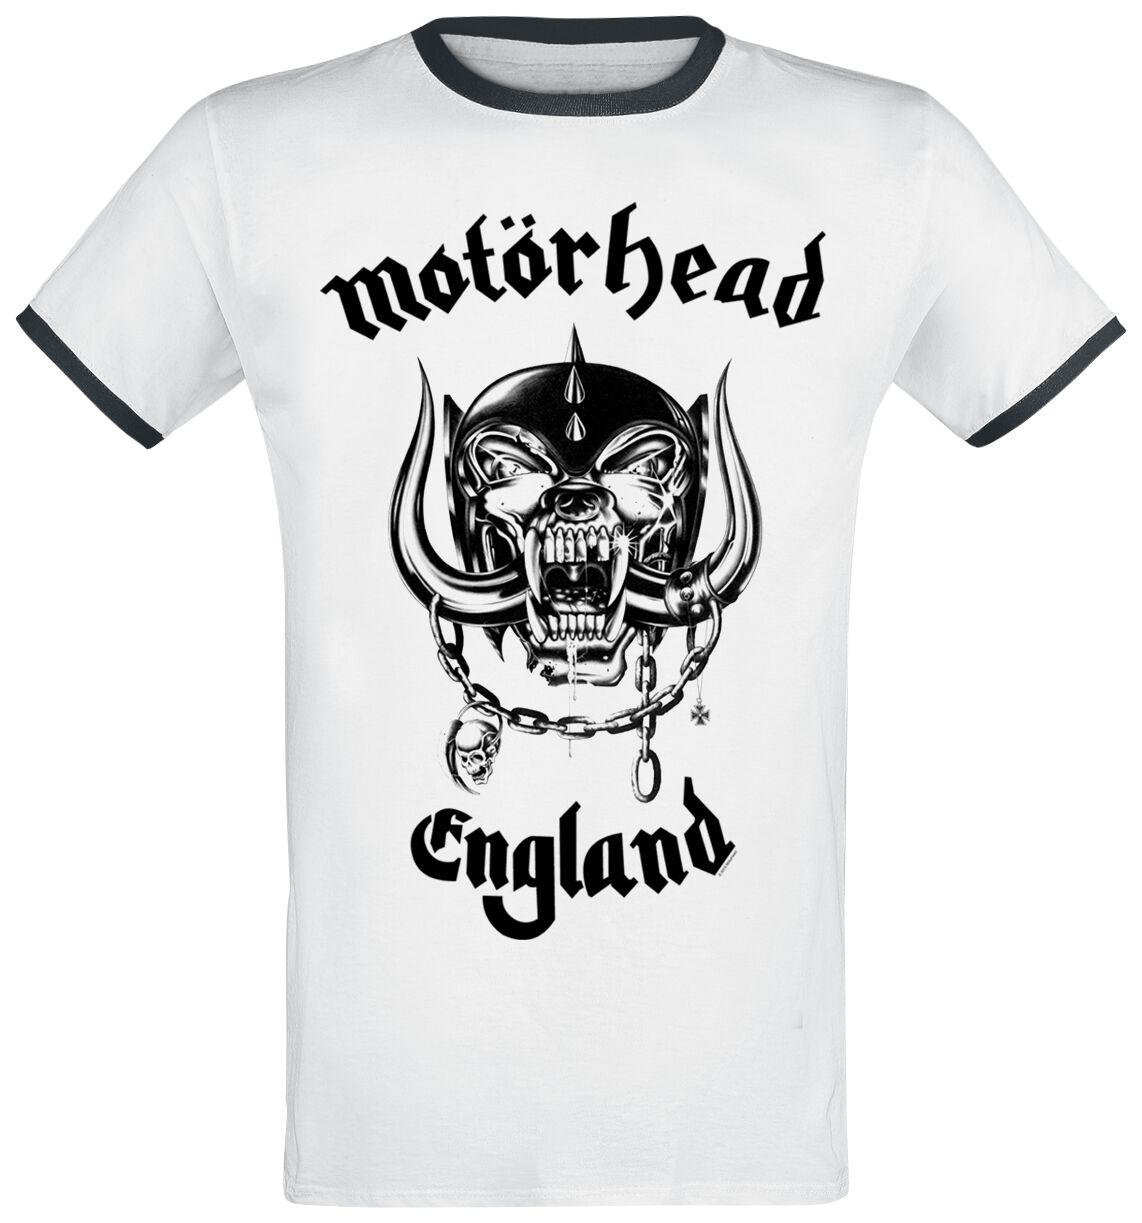 Motörhead T-Shirt - England - S bis 3XL - für Männer - Größe XL - weiß  - Lizenziertes Merchandise!